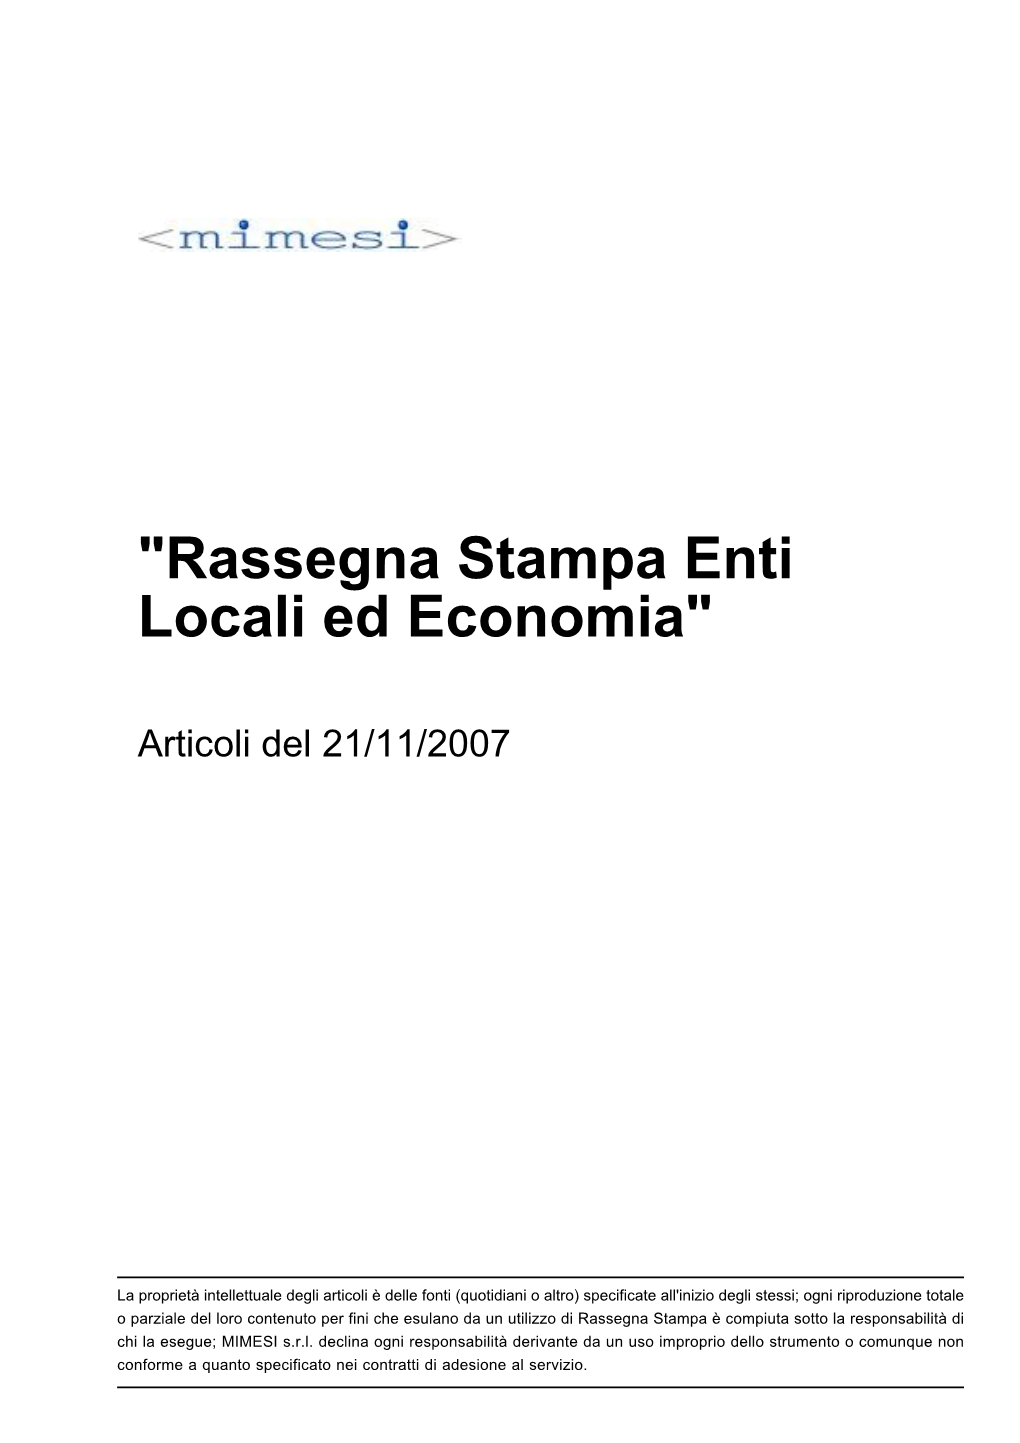 "Rassegna Stampa Enti Locali Ed Economia"